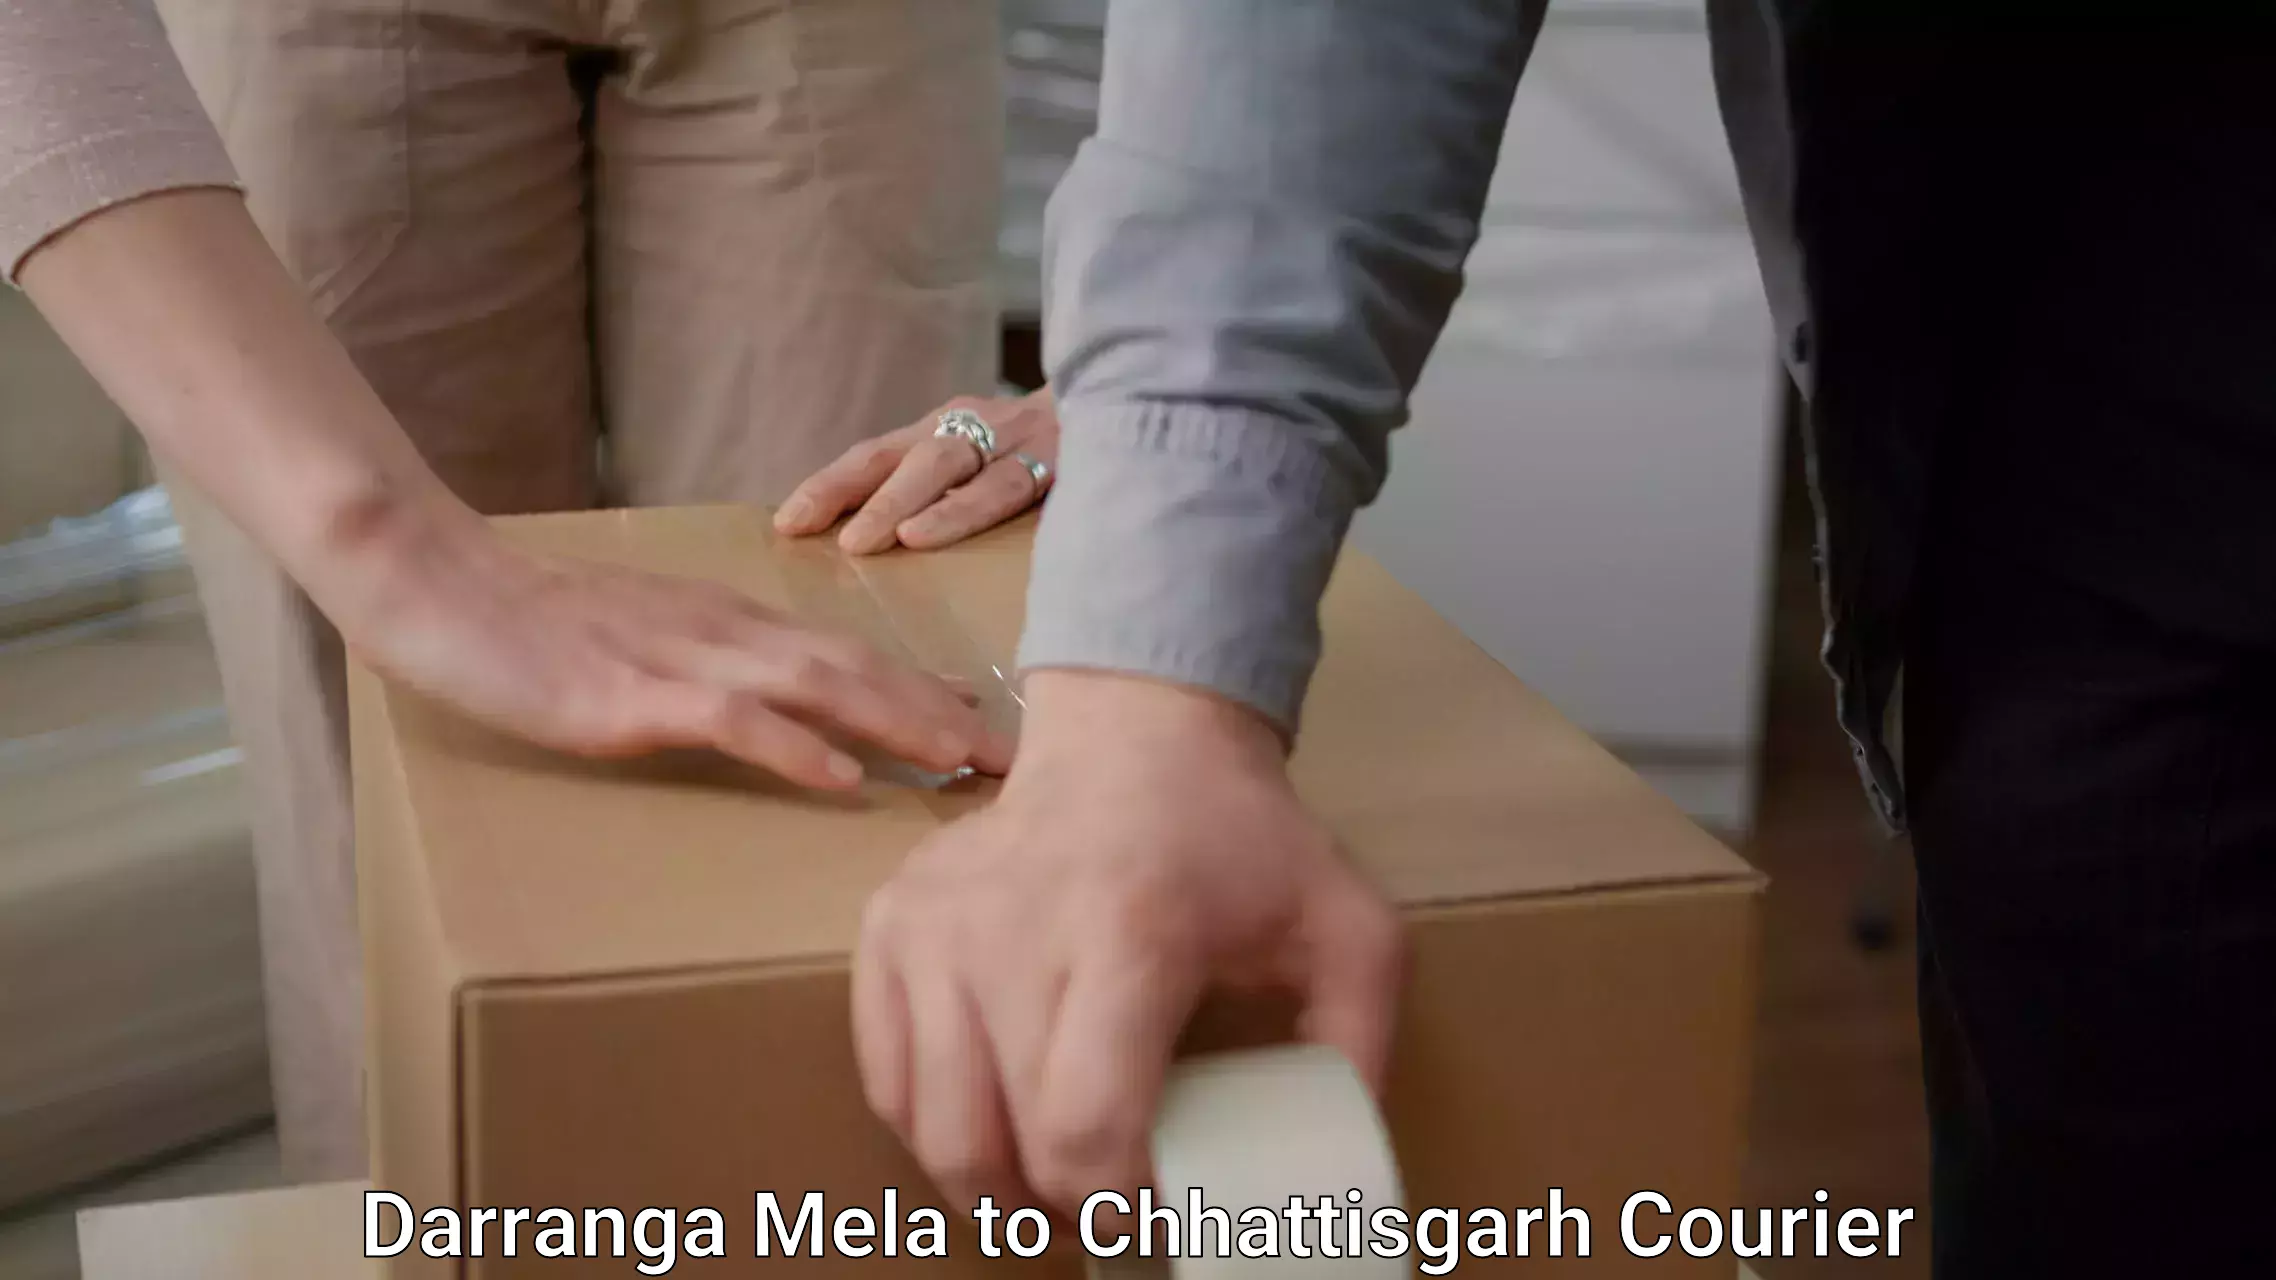 Efficient packing and moving Darranga Mela to Sakti